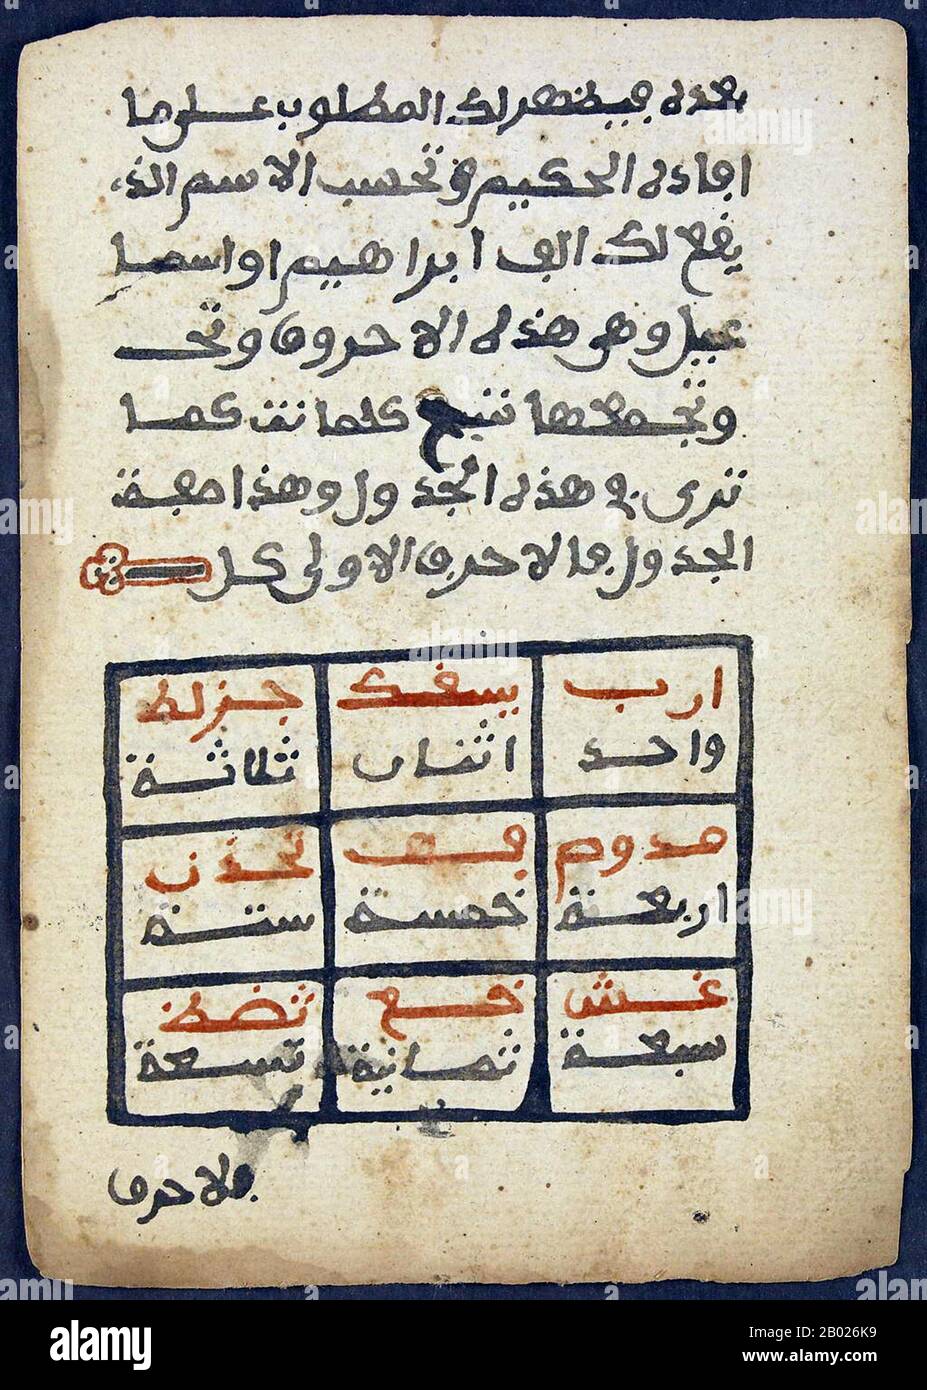 timbuktu manuscripts divination texts